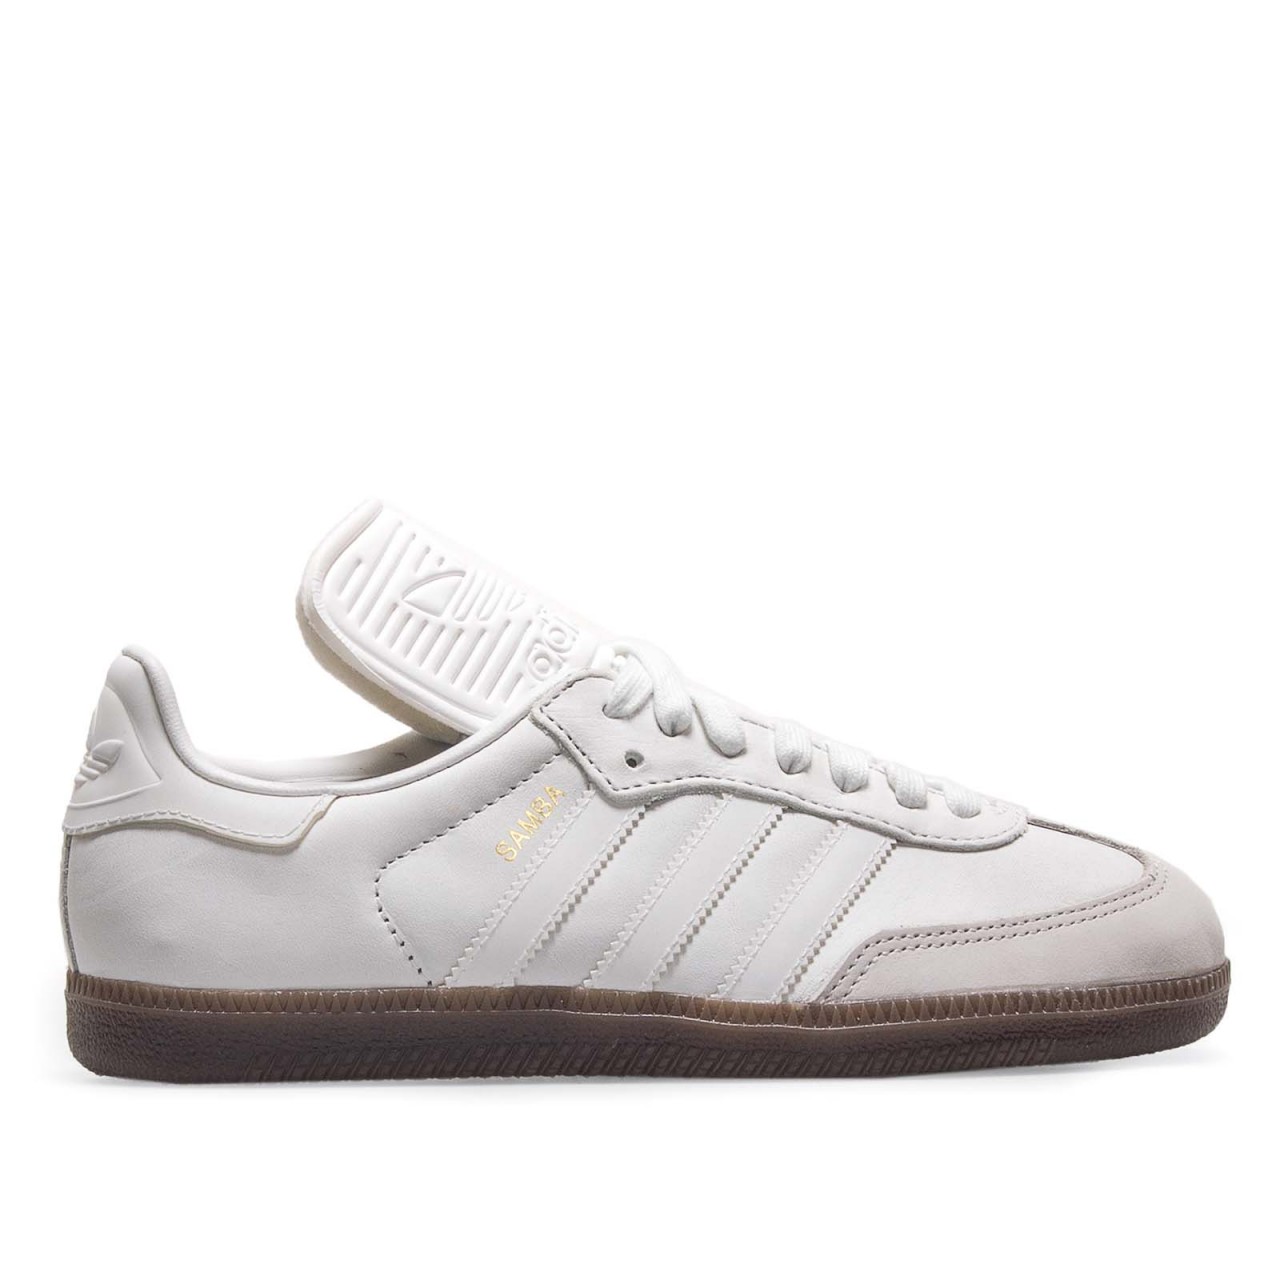 Adidas Samba Classic OG White Grey